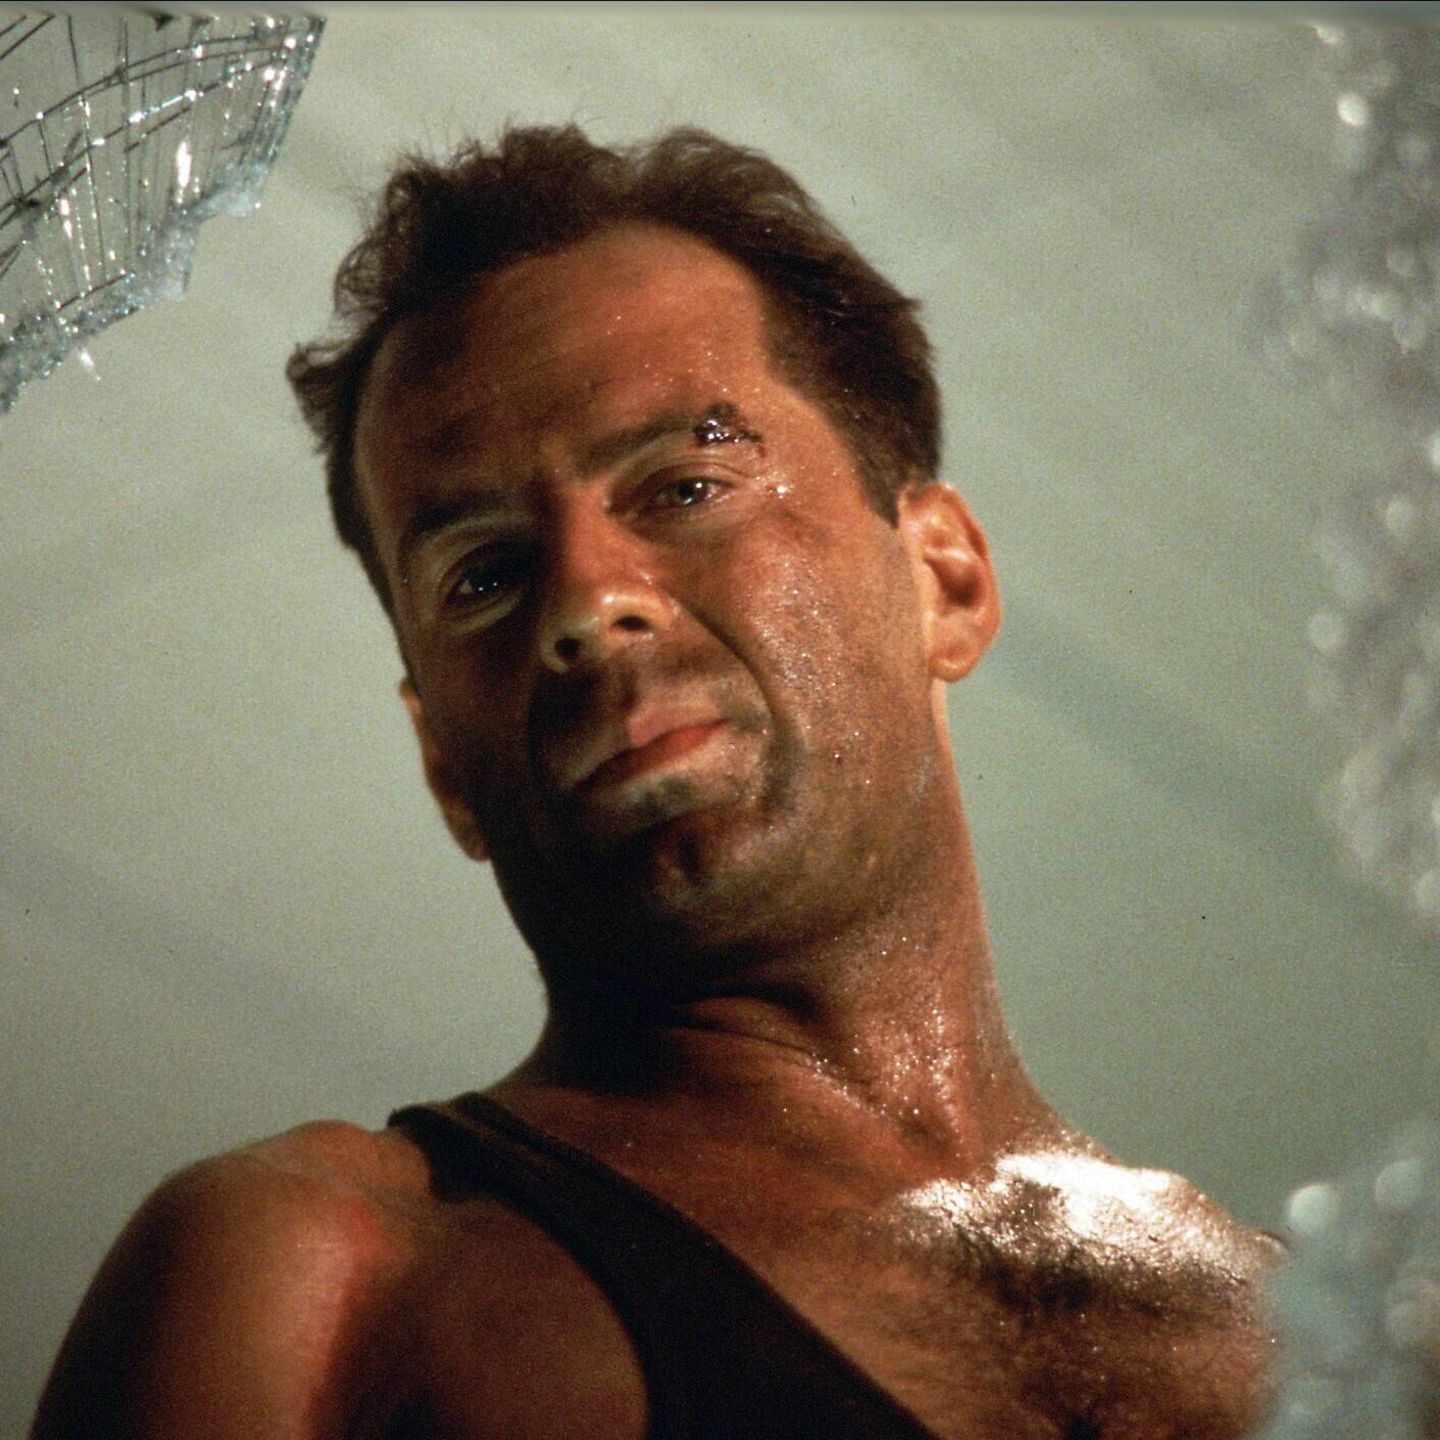 Bruce Willis als John McClane in "Stirb Langsam"